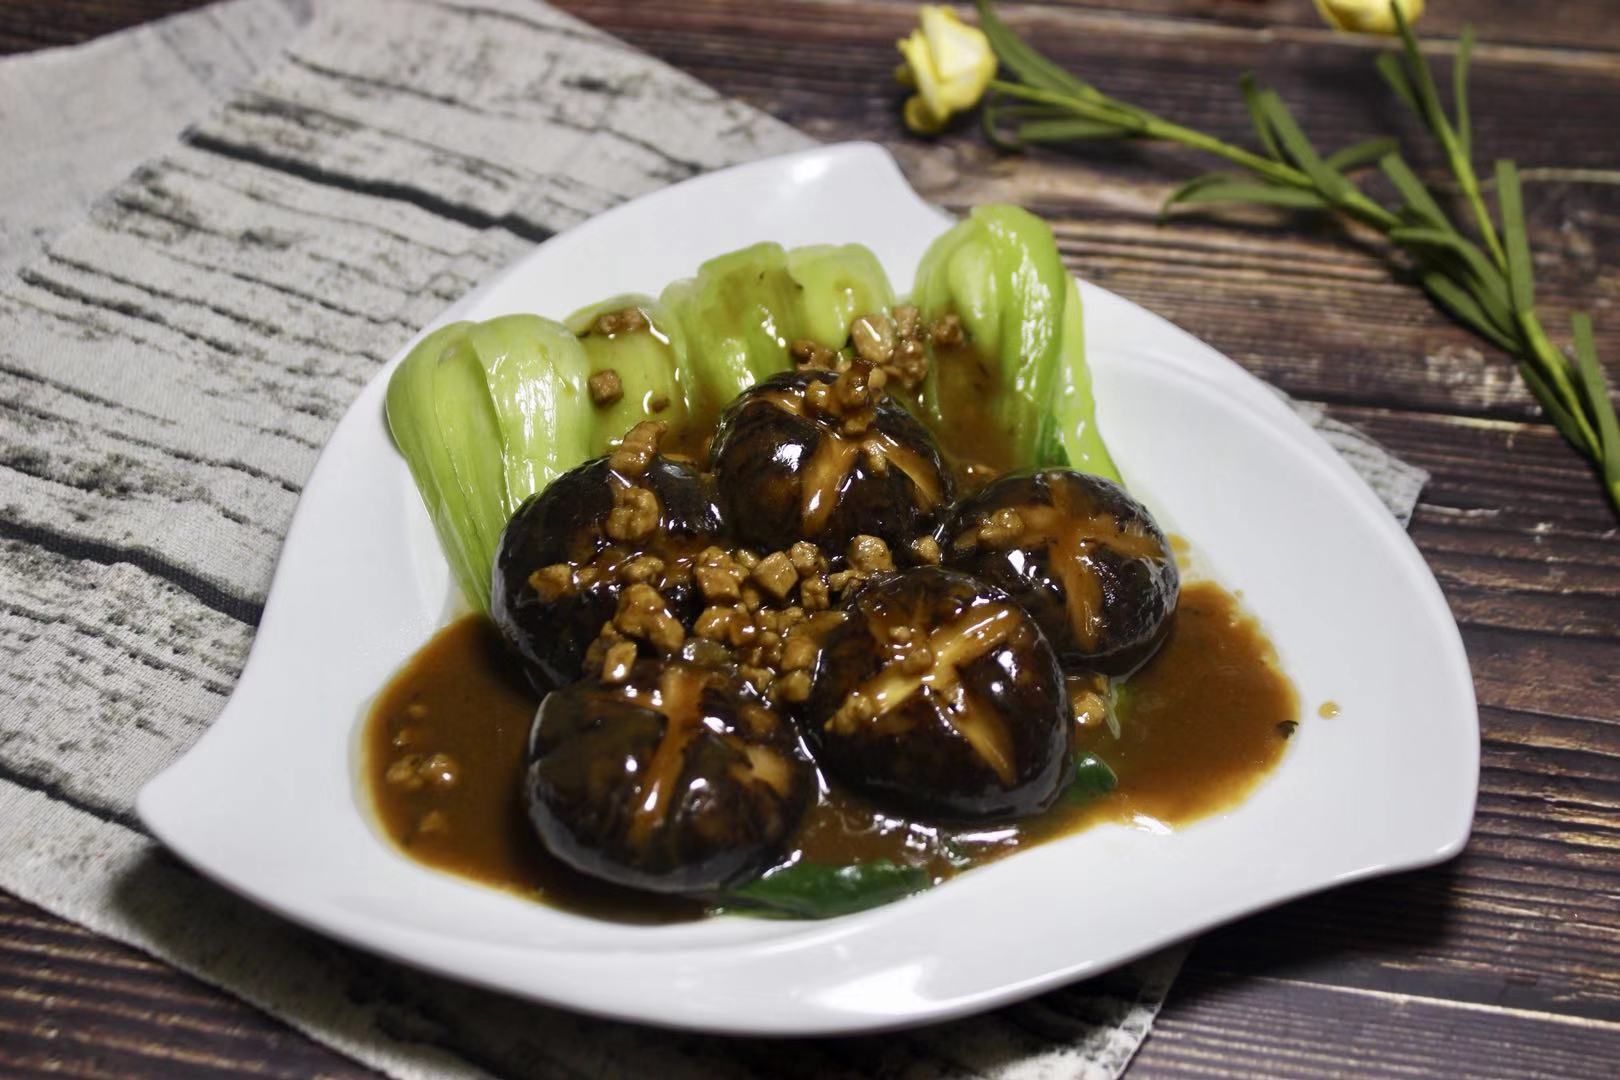 嫩滑的香菇搭配上海青,美味无法挡,营养又健康